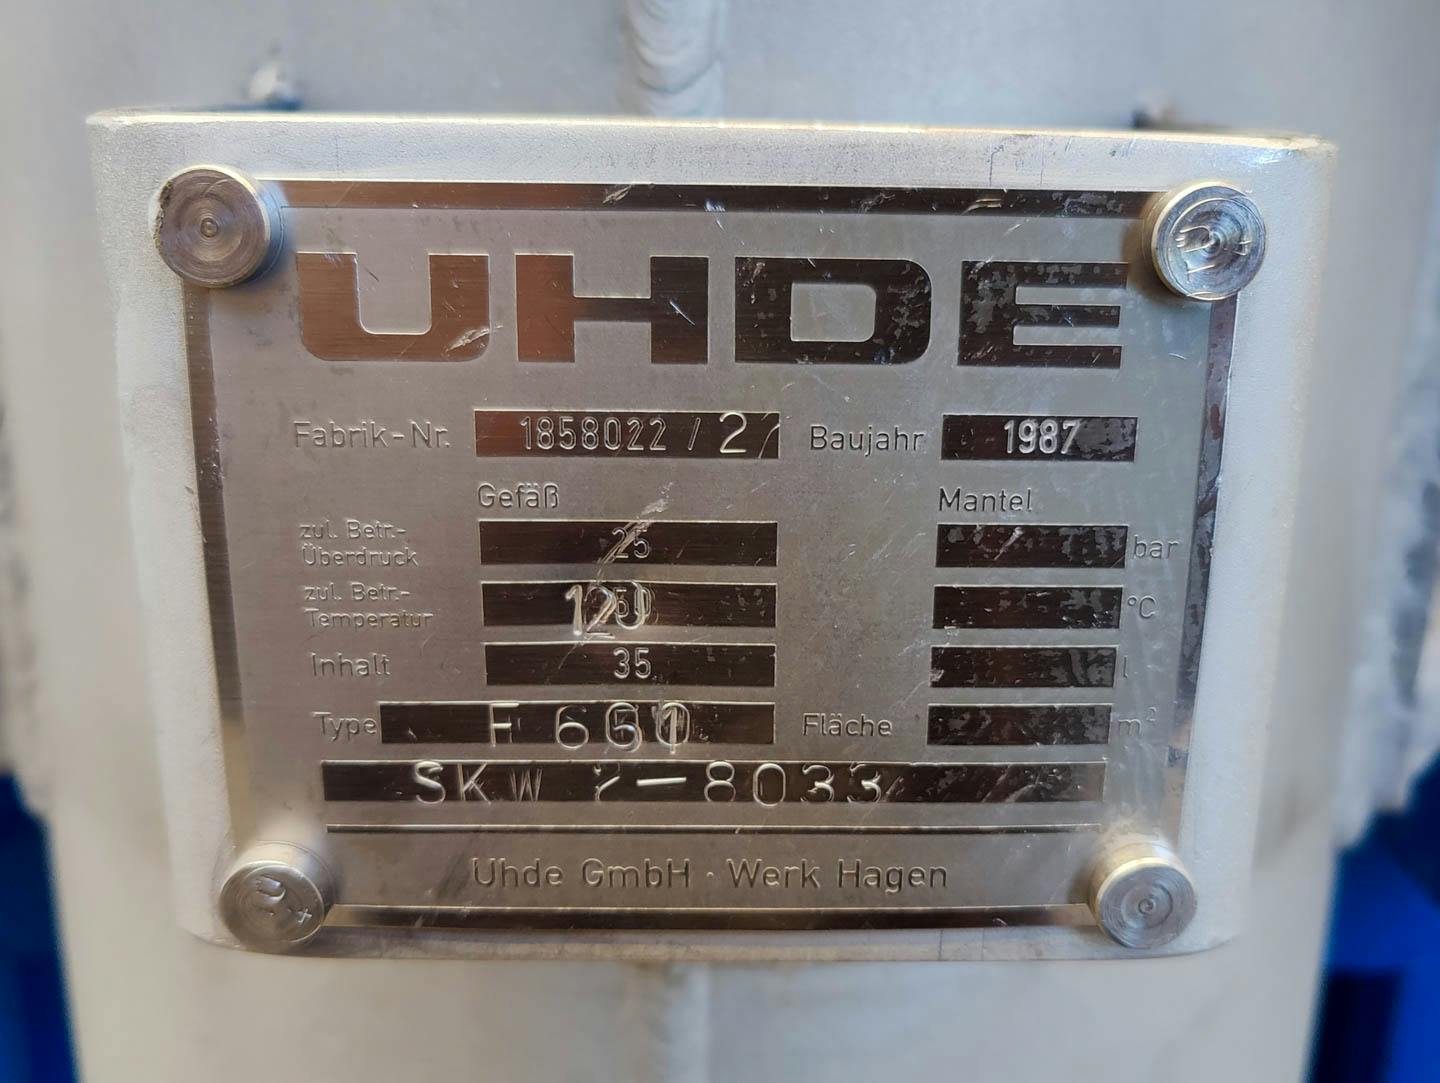 Uhde Hagen F 600 (35 Ltr.) - Recipiente de presión - image 8